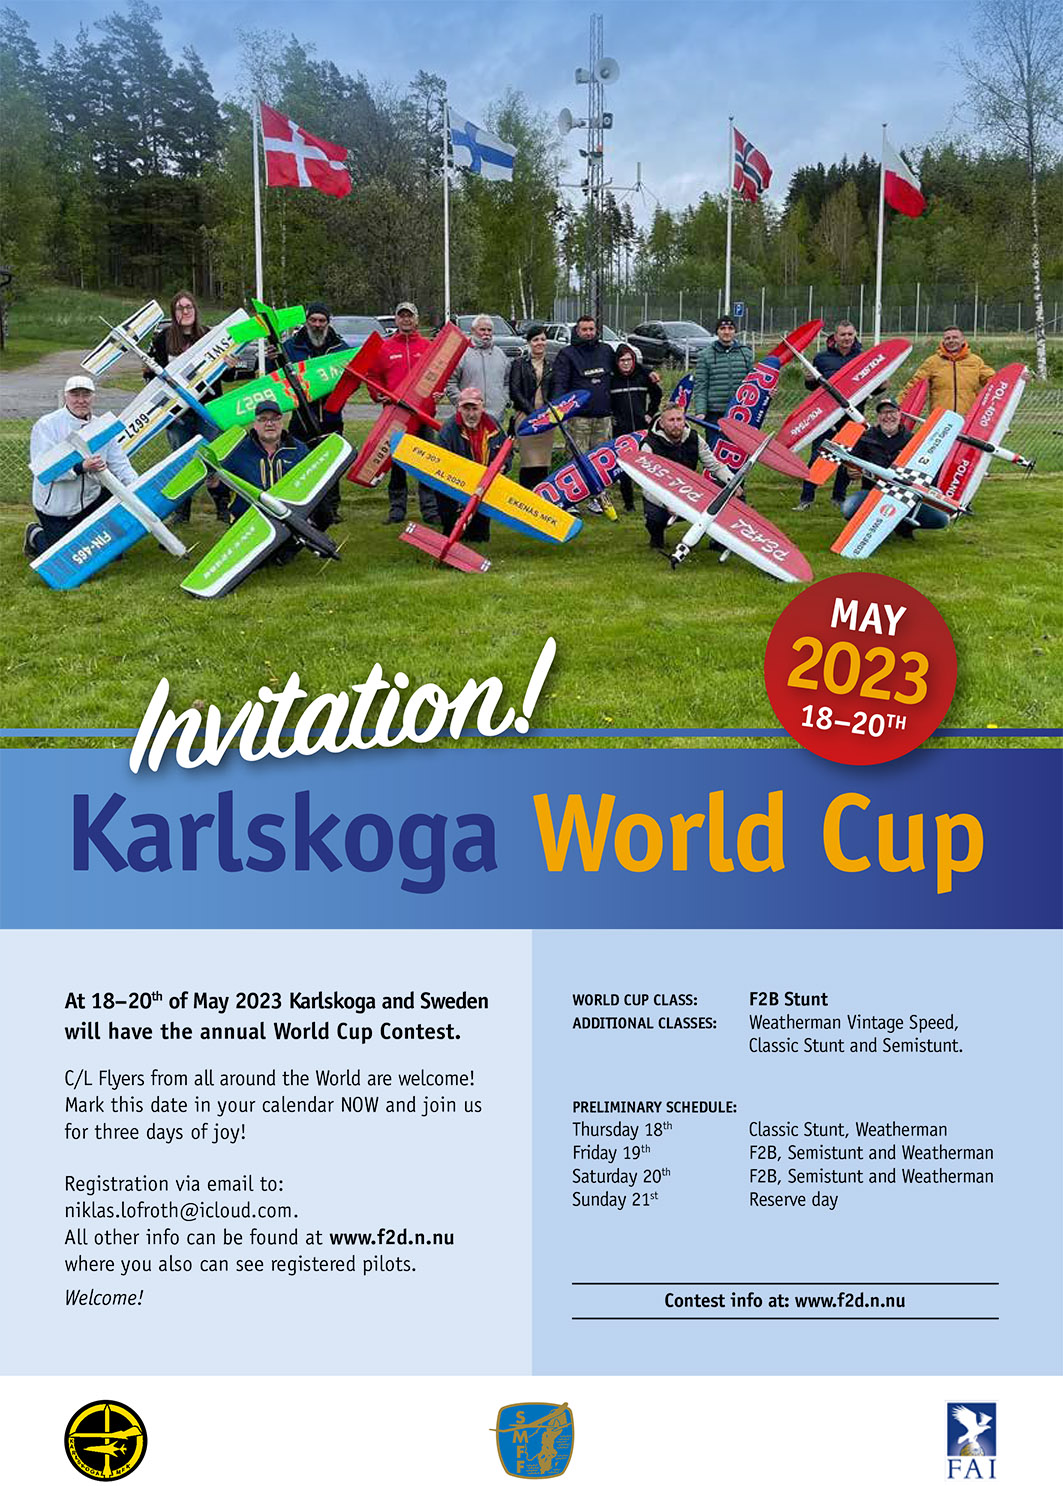 KarlskogaWC2023_invitation.jpg